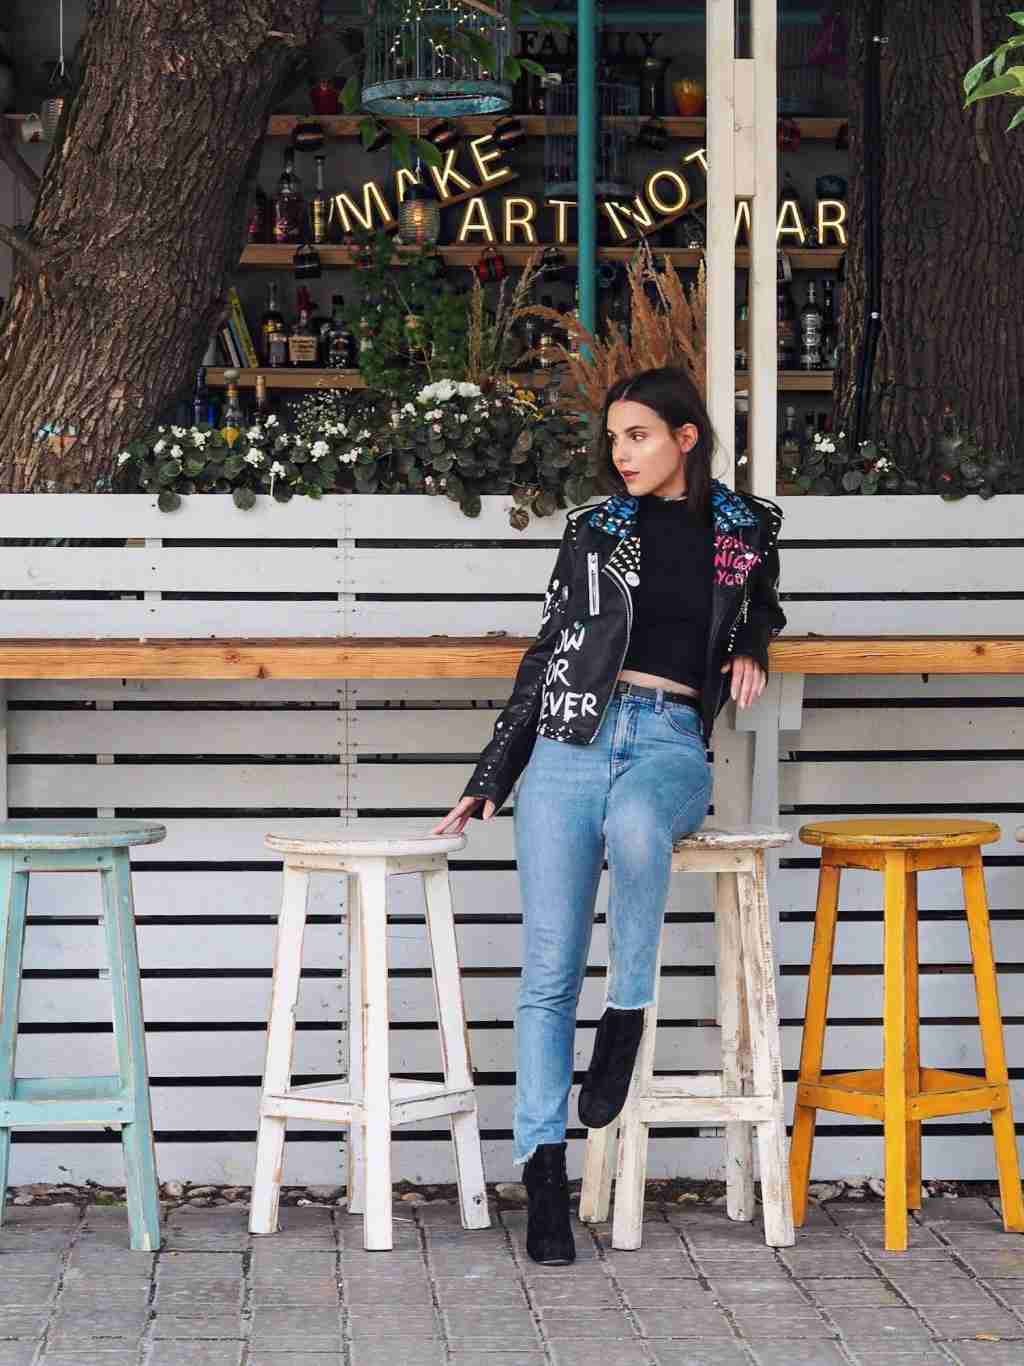 Os jeans da mamãe combinam a jaqueta de couro preta feminina das tendências da moda com botins padronizados